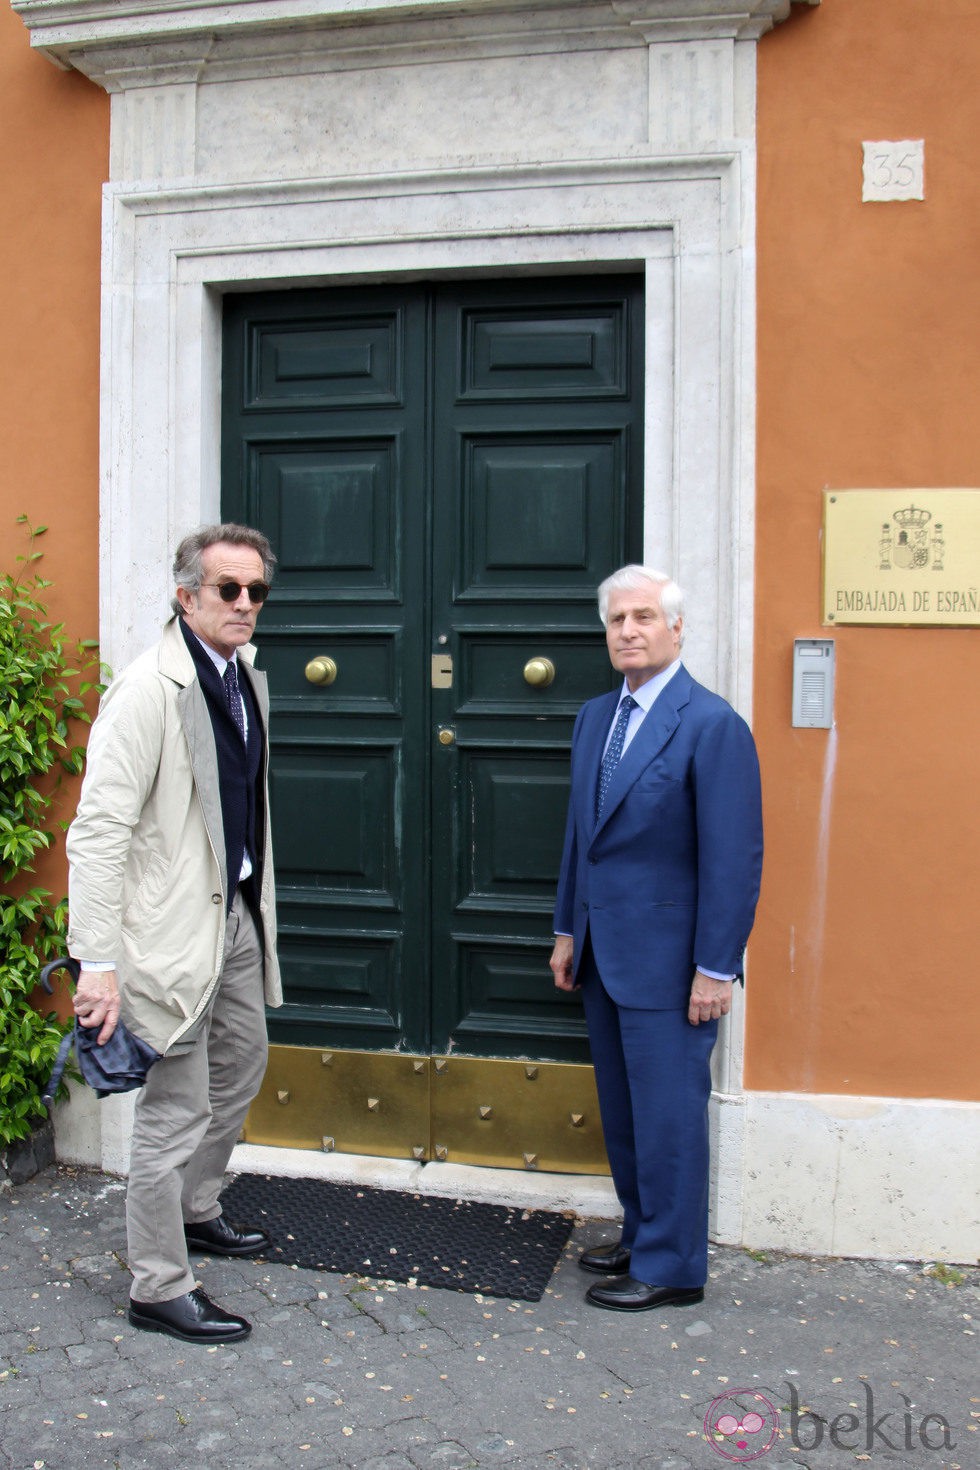 El Duque de Alba y el Duque de Húescar en la Embajada de España en Roma